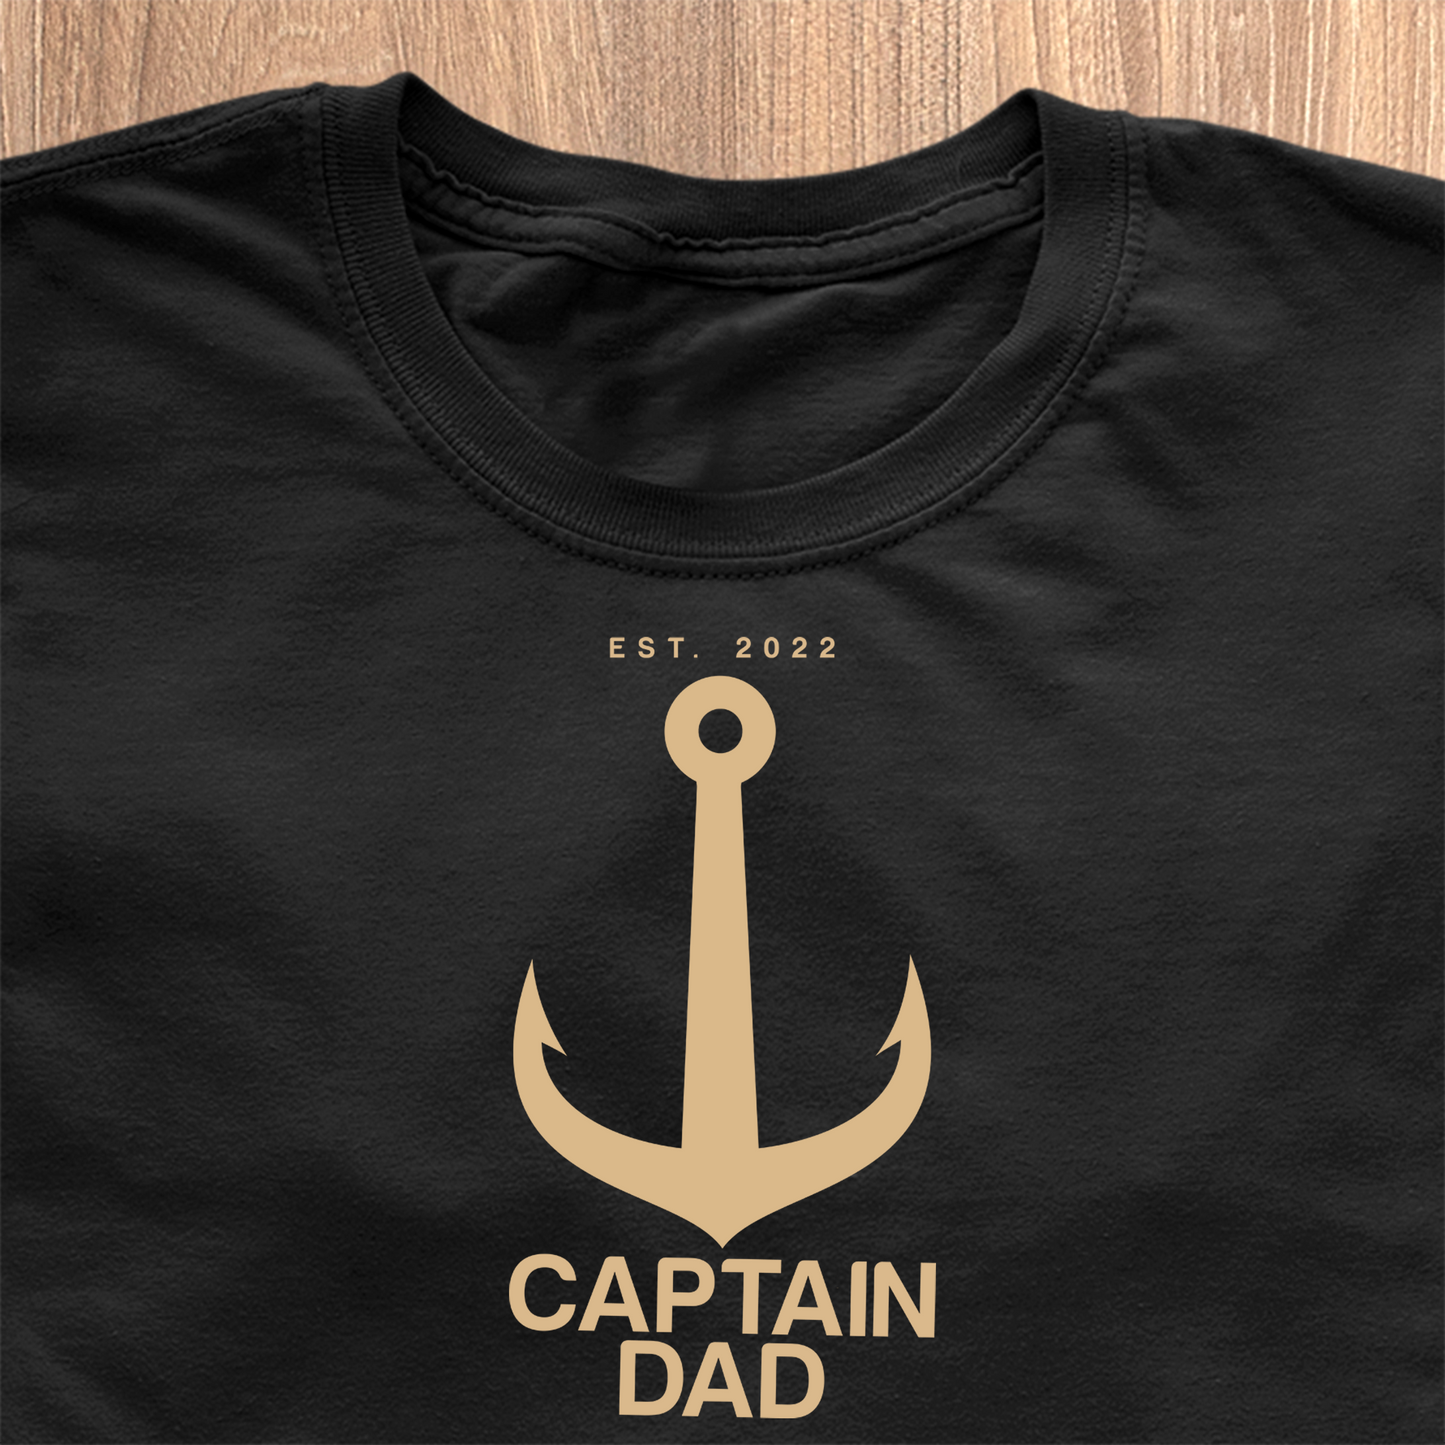 Captain Dad T-Shirt - Date Personnalisée 